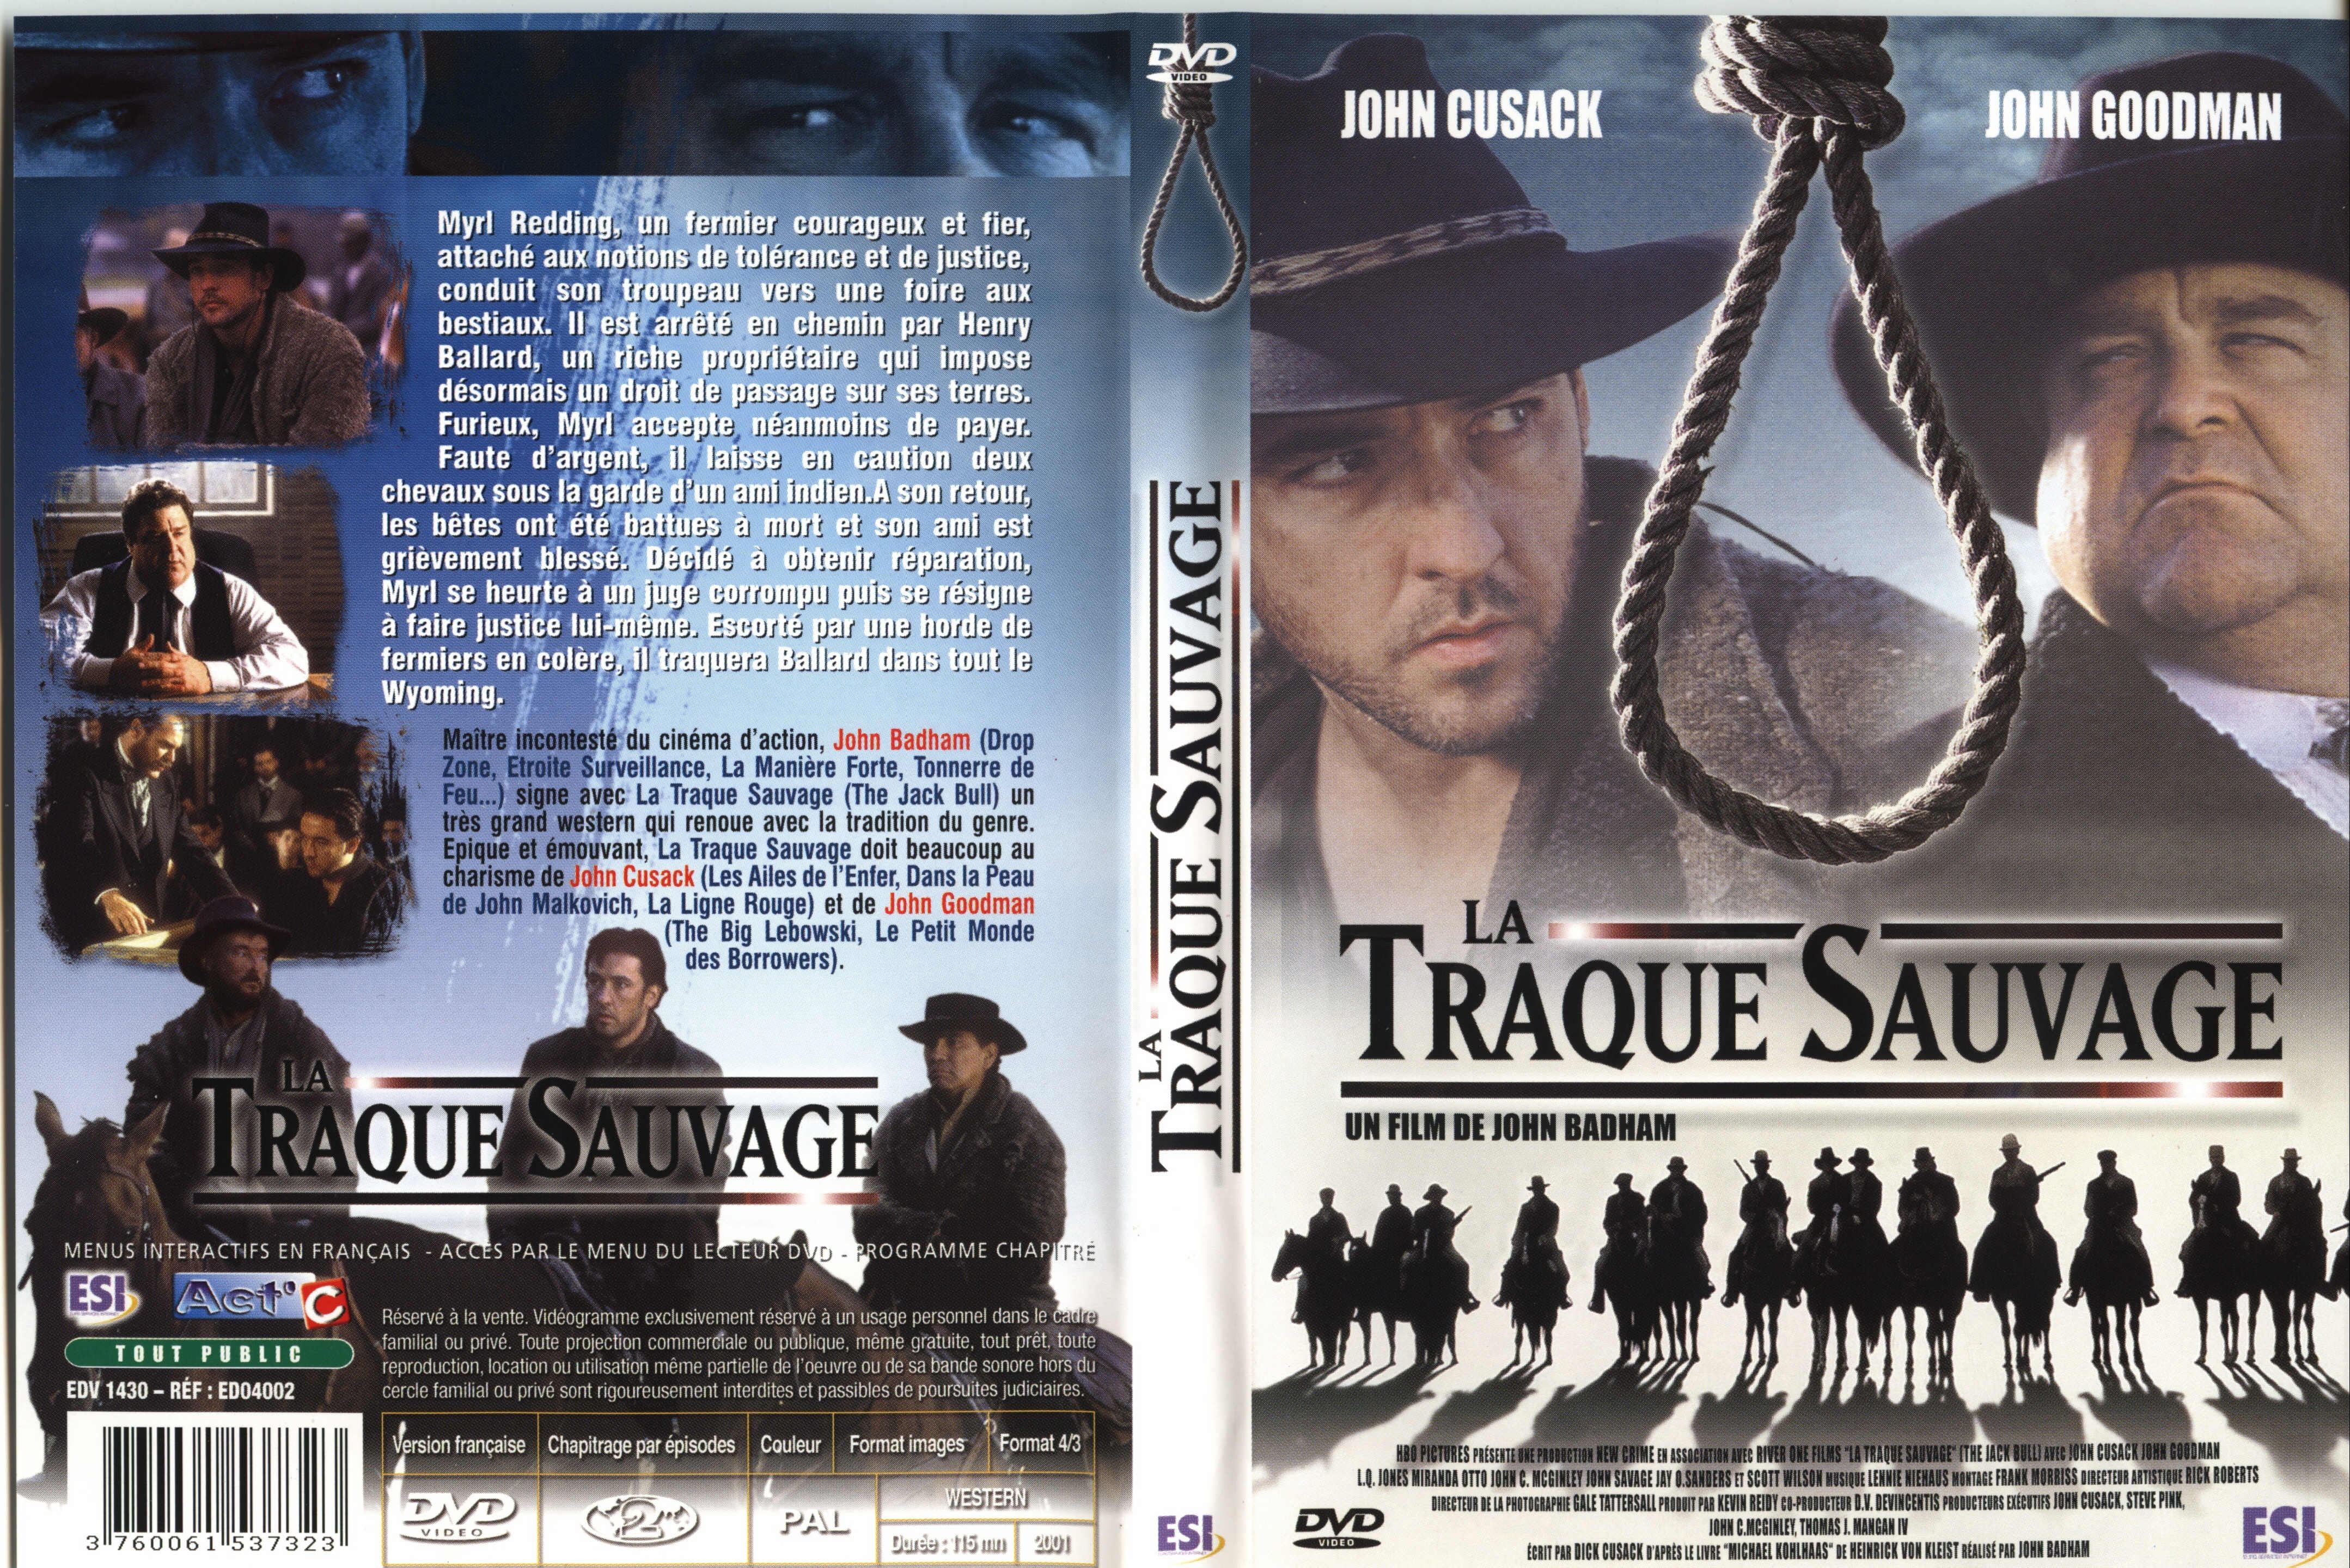 Jaquette DVD La traque sauvage